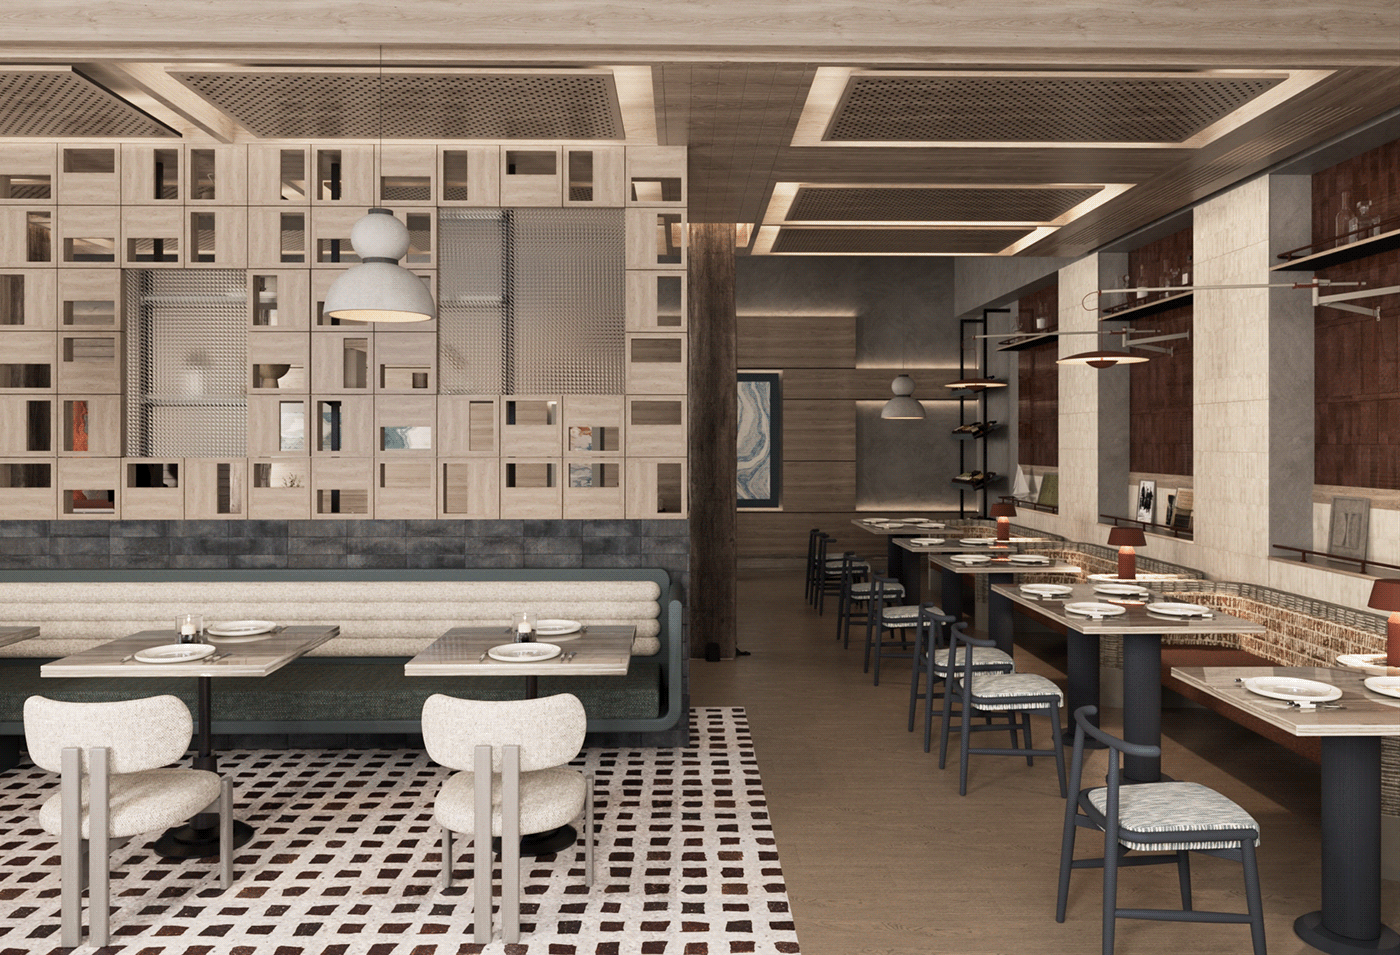 3ds max architecture visualization interior design  corona archviz Render modern 3D restaurant